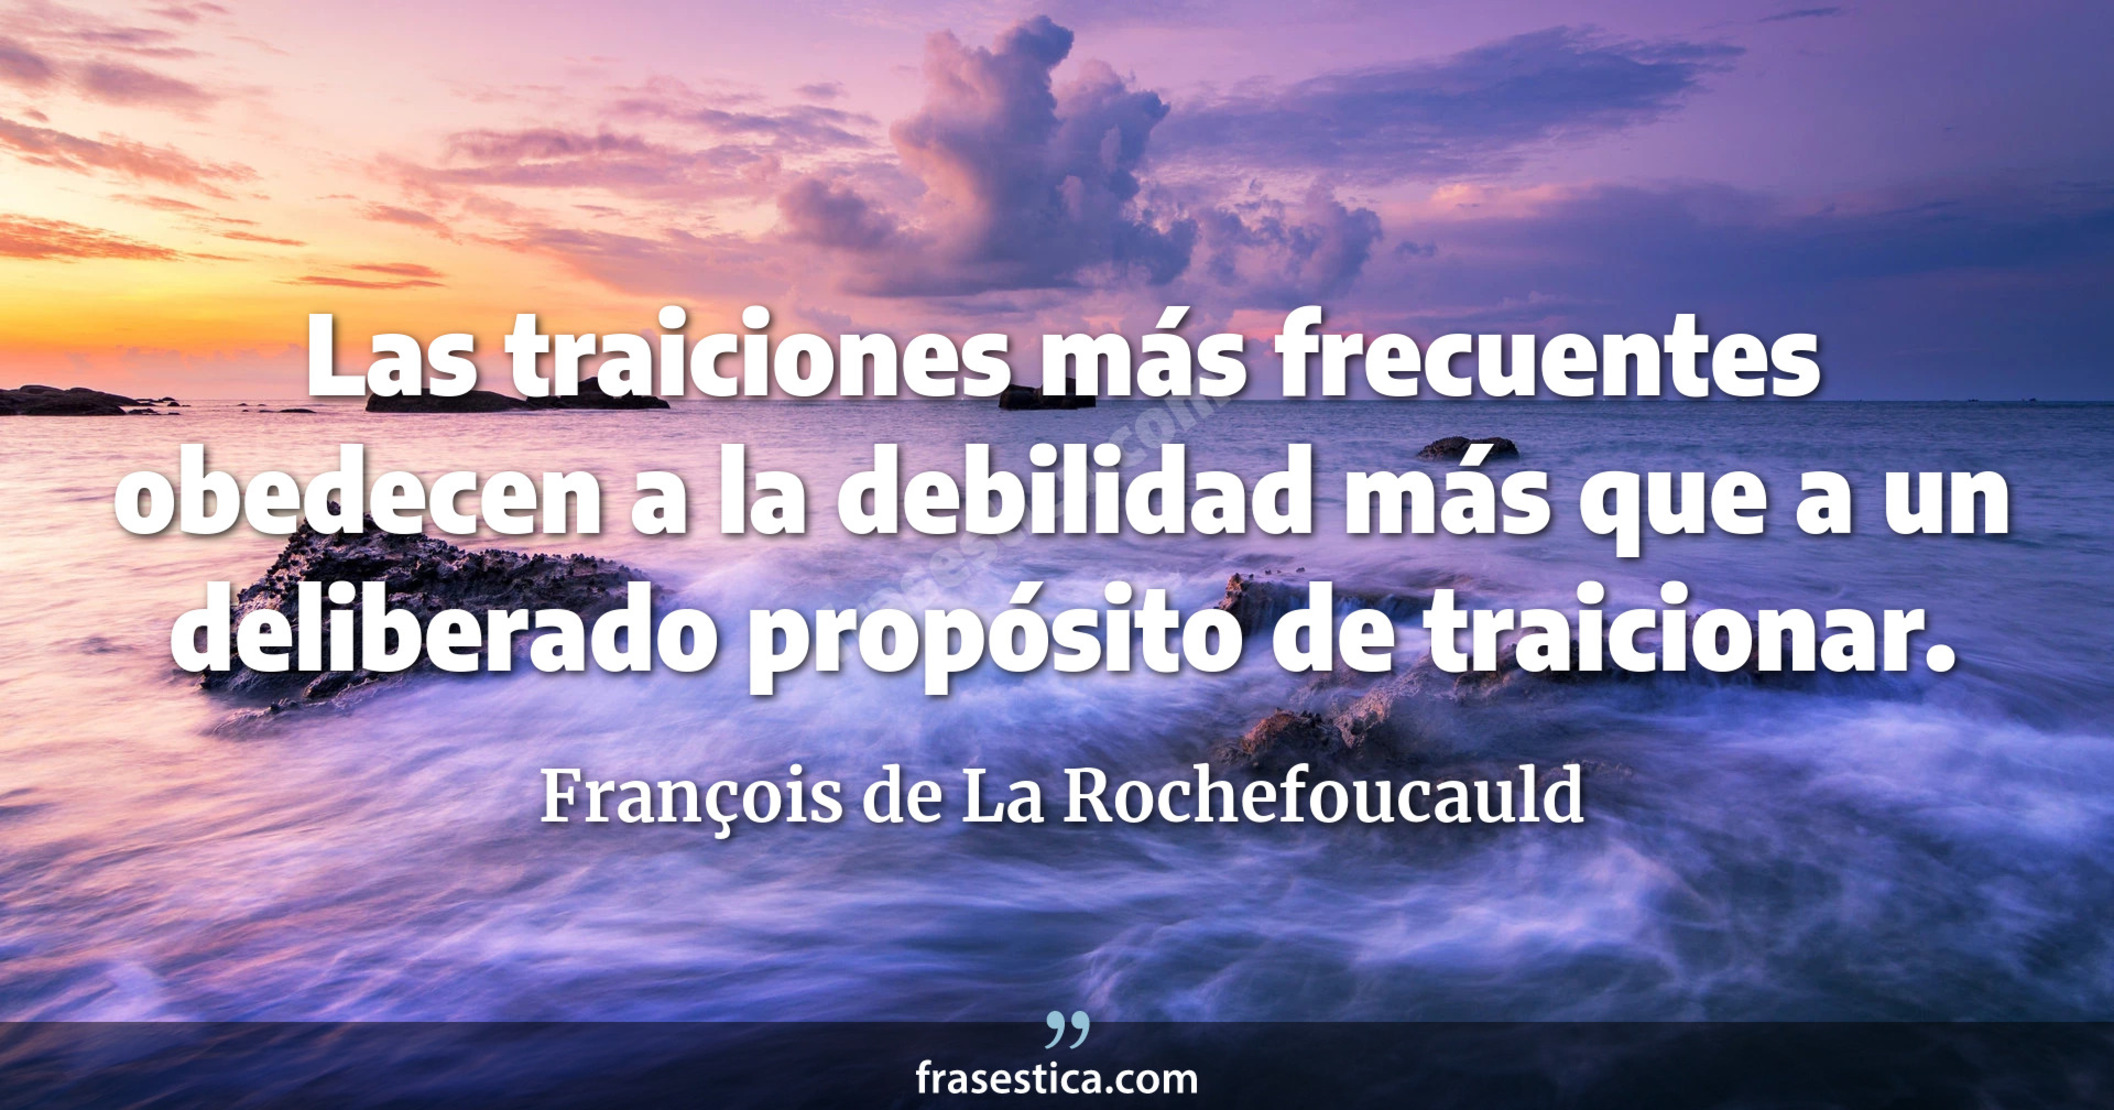 Las traiciones más frecuentes obedecen a la debilidad más que a un deliberado propósito de traicionar. - François de La Rochefoucauld